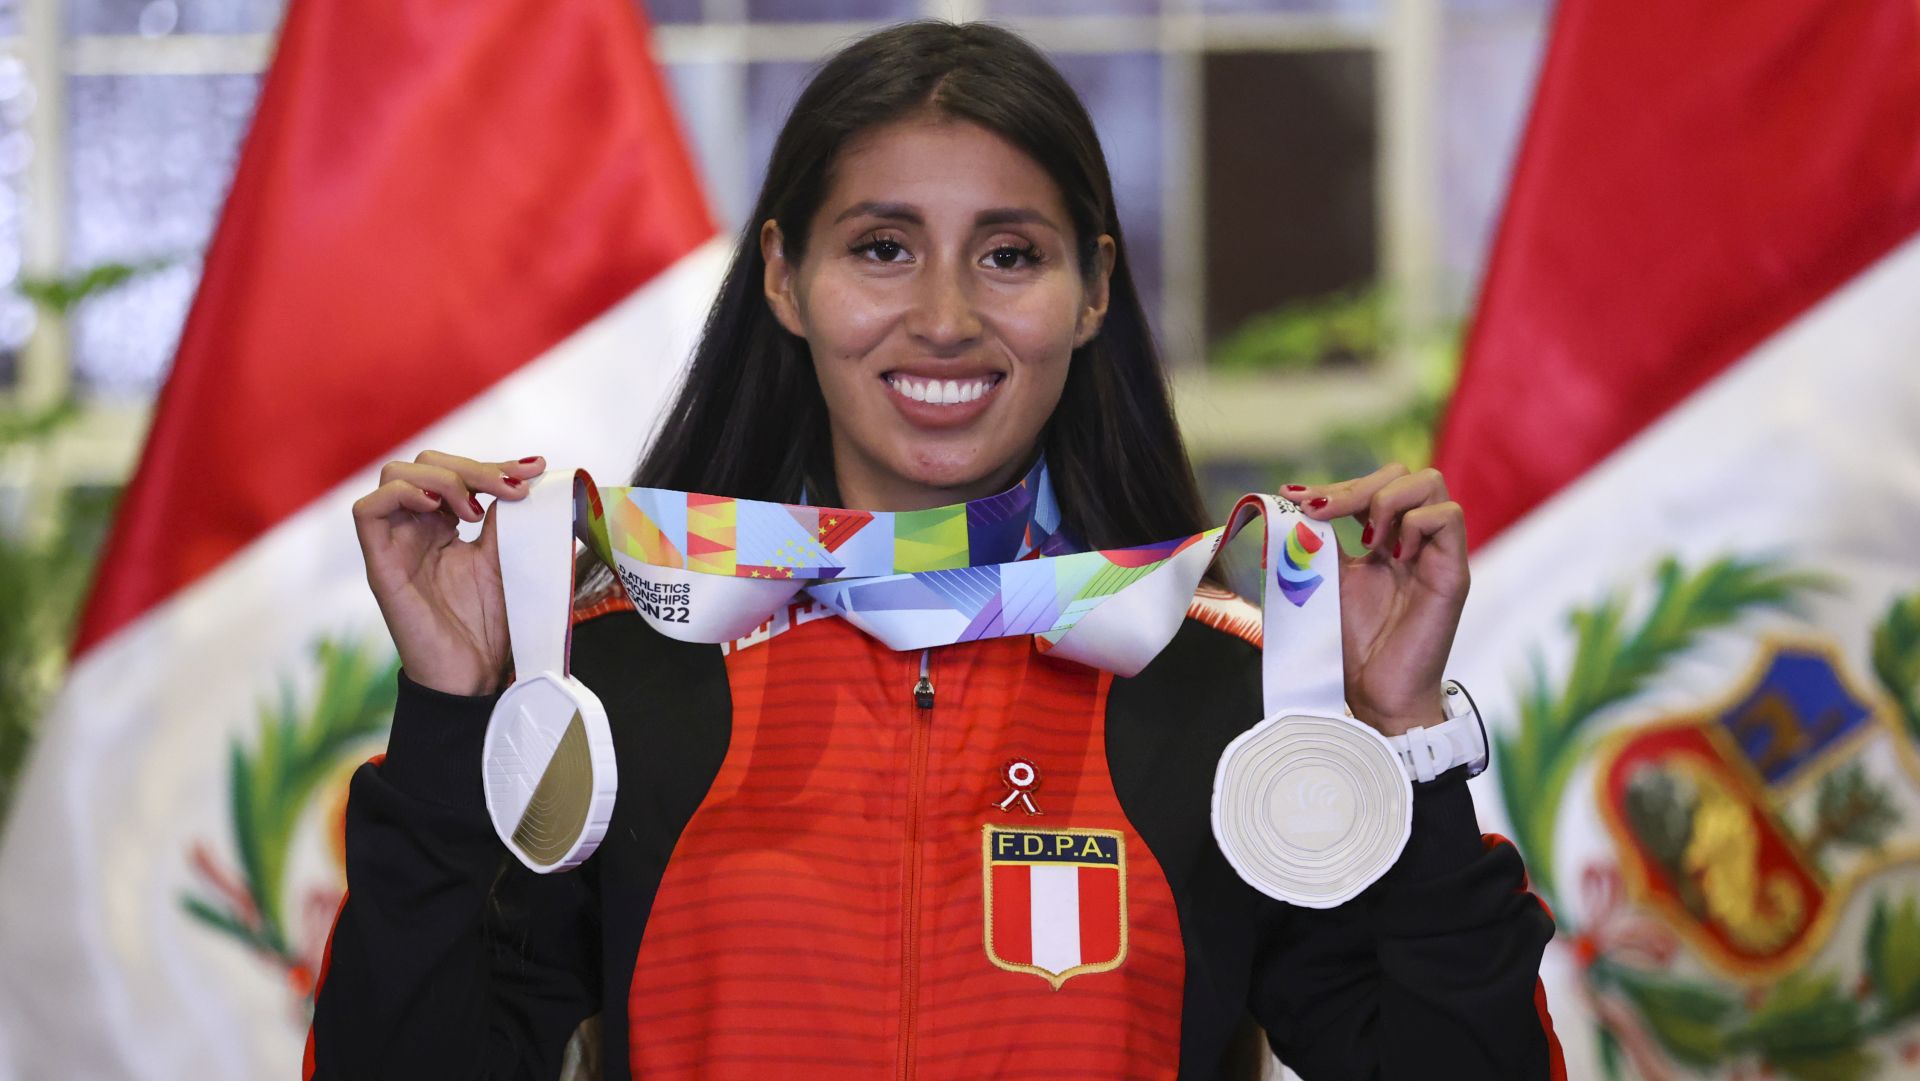 La medalla de oro de Kimberly García en el Mundial de Oregón quedará marcado en los libros de historia del atletismo.  (worldathletics)